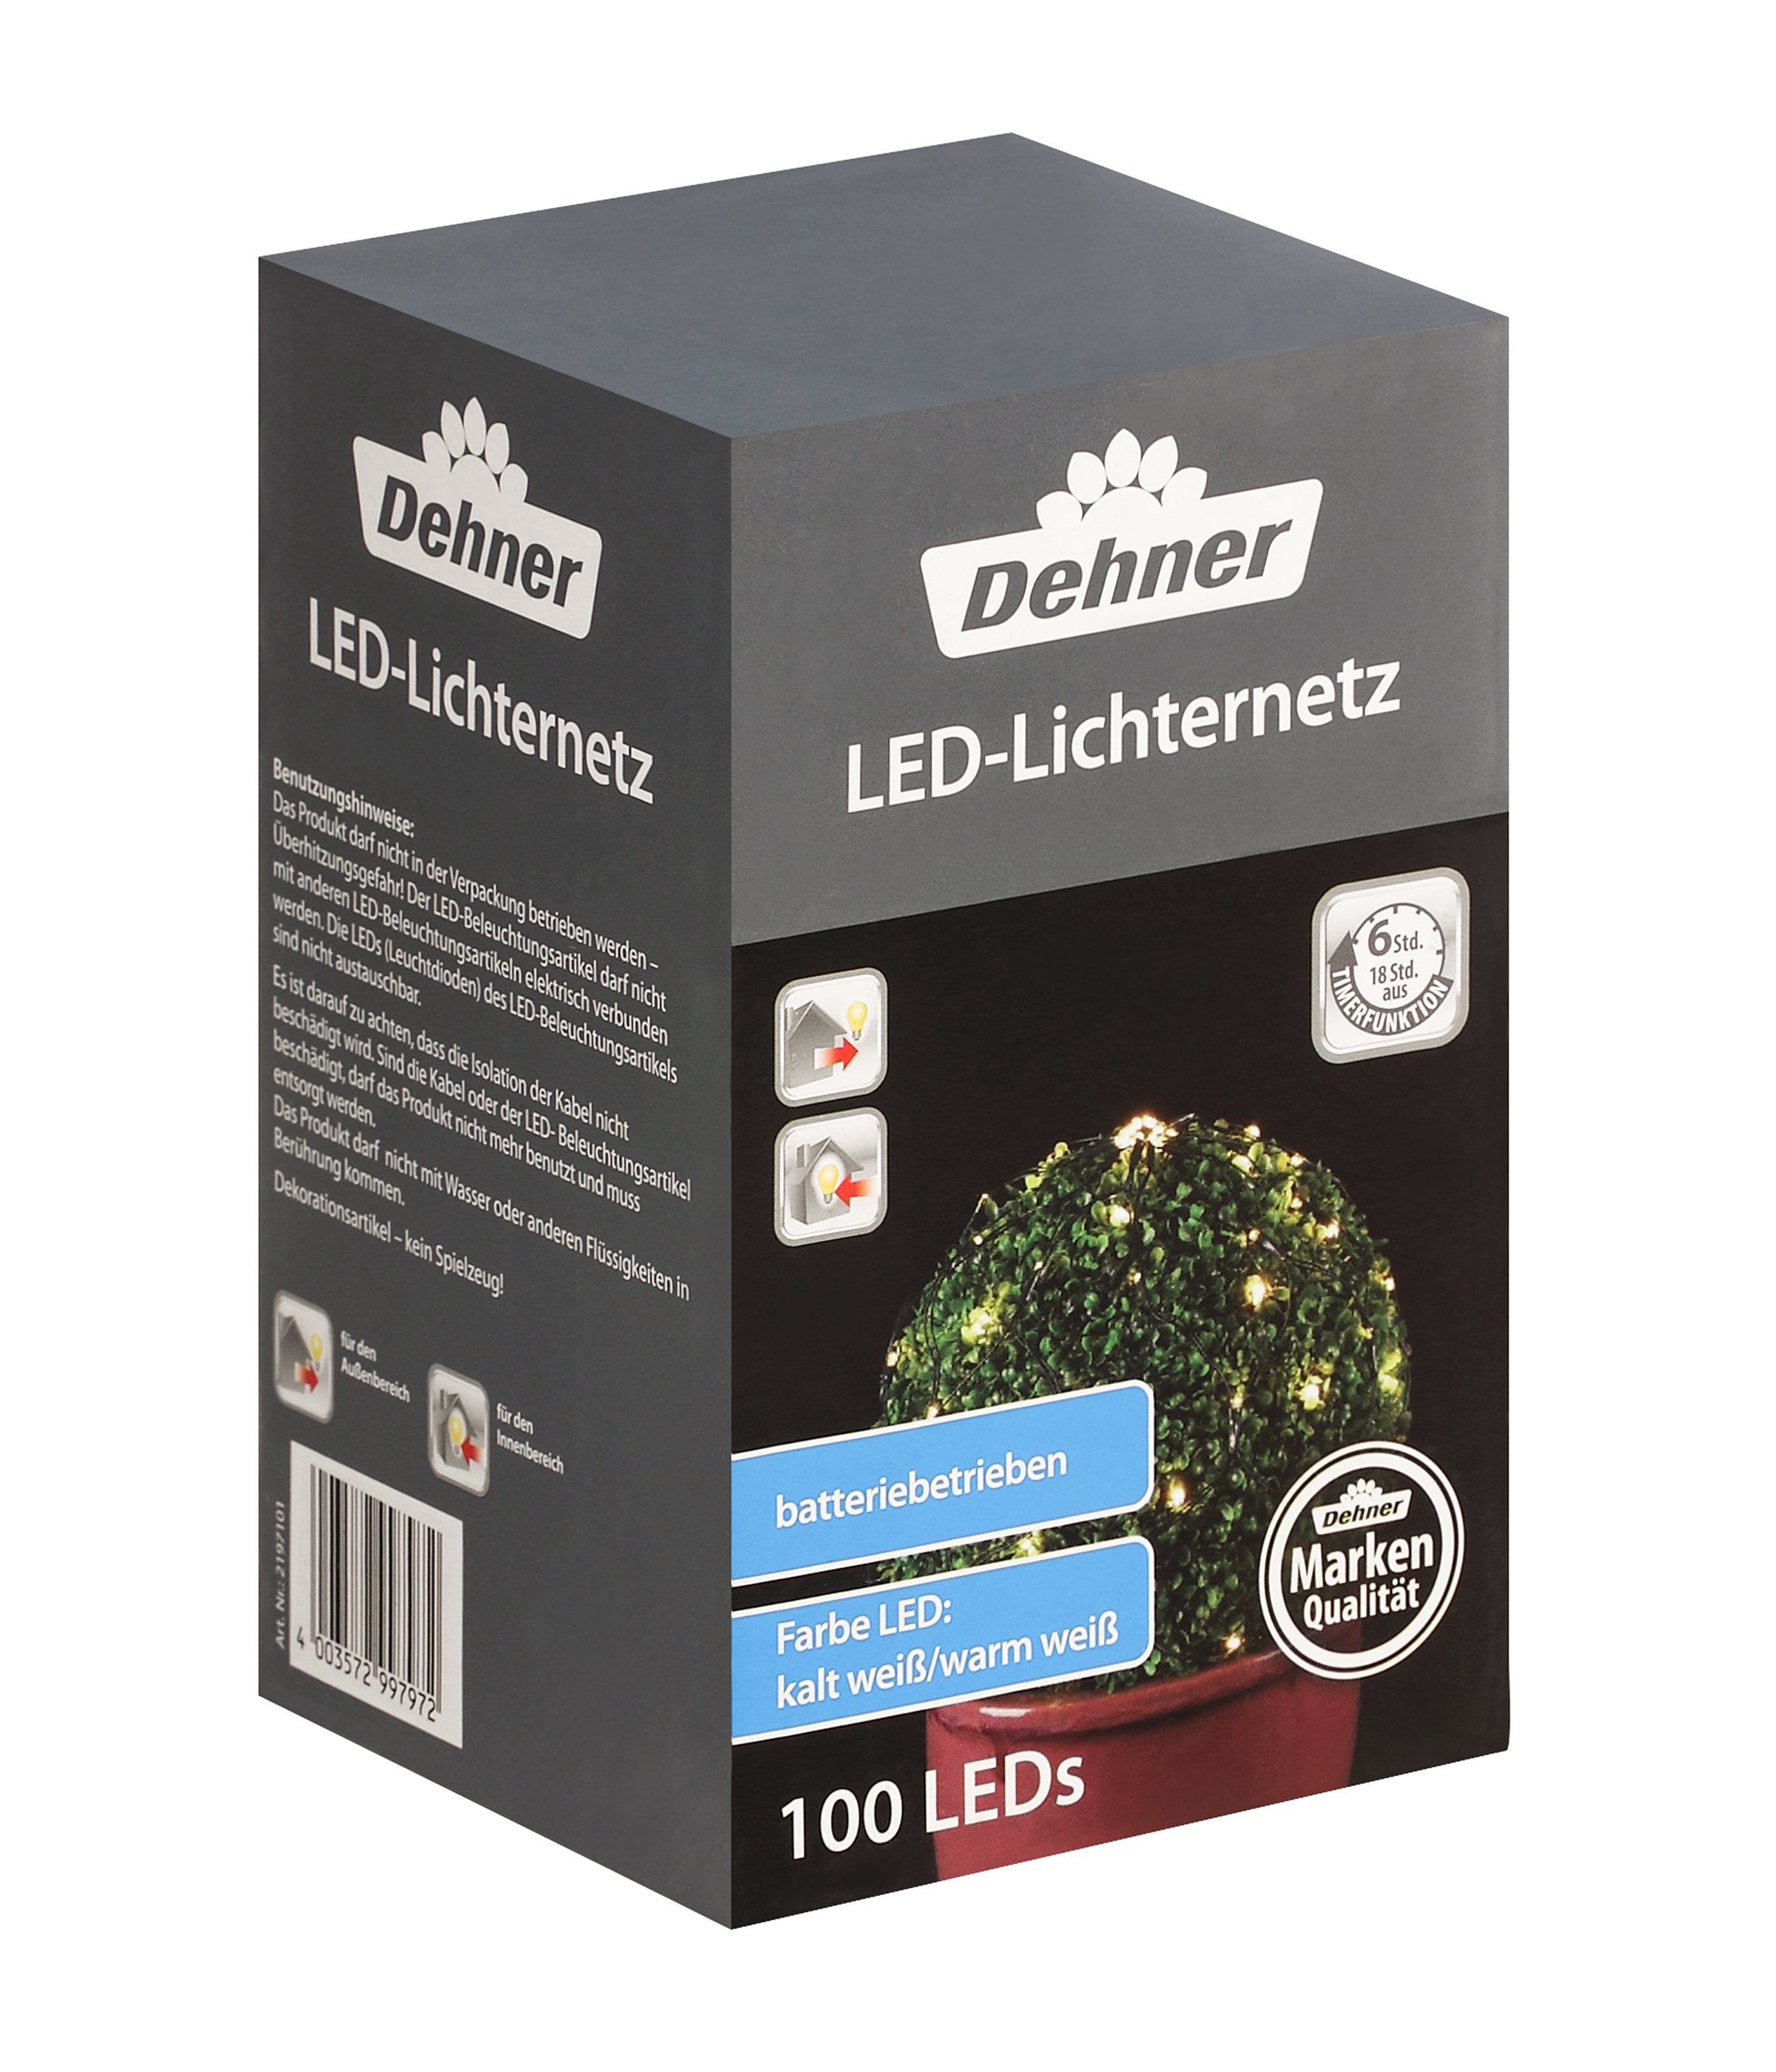 Dehner LED-Lichterkette LED Lichterkette, Lichternetz und für Indoor/Outdoor mit 100 Timer, LEDs, kaltweiß/warmweiß, Farbwechselfunktion